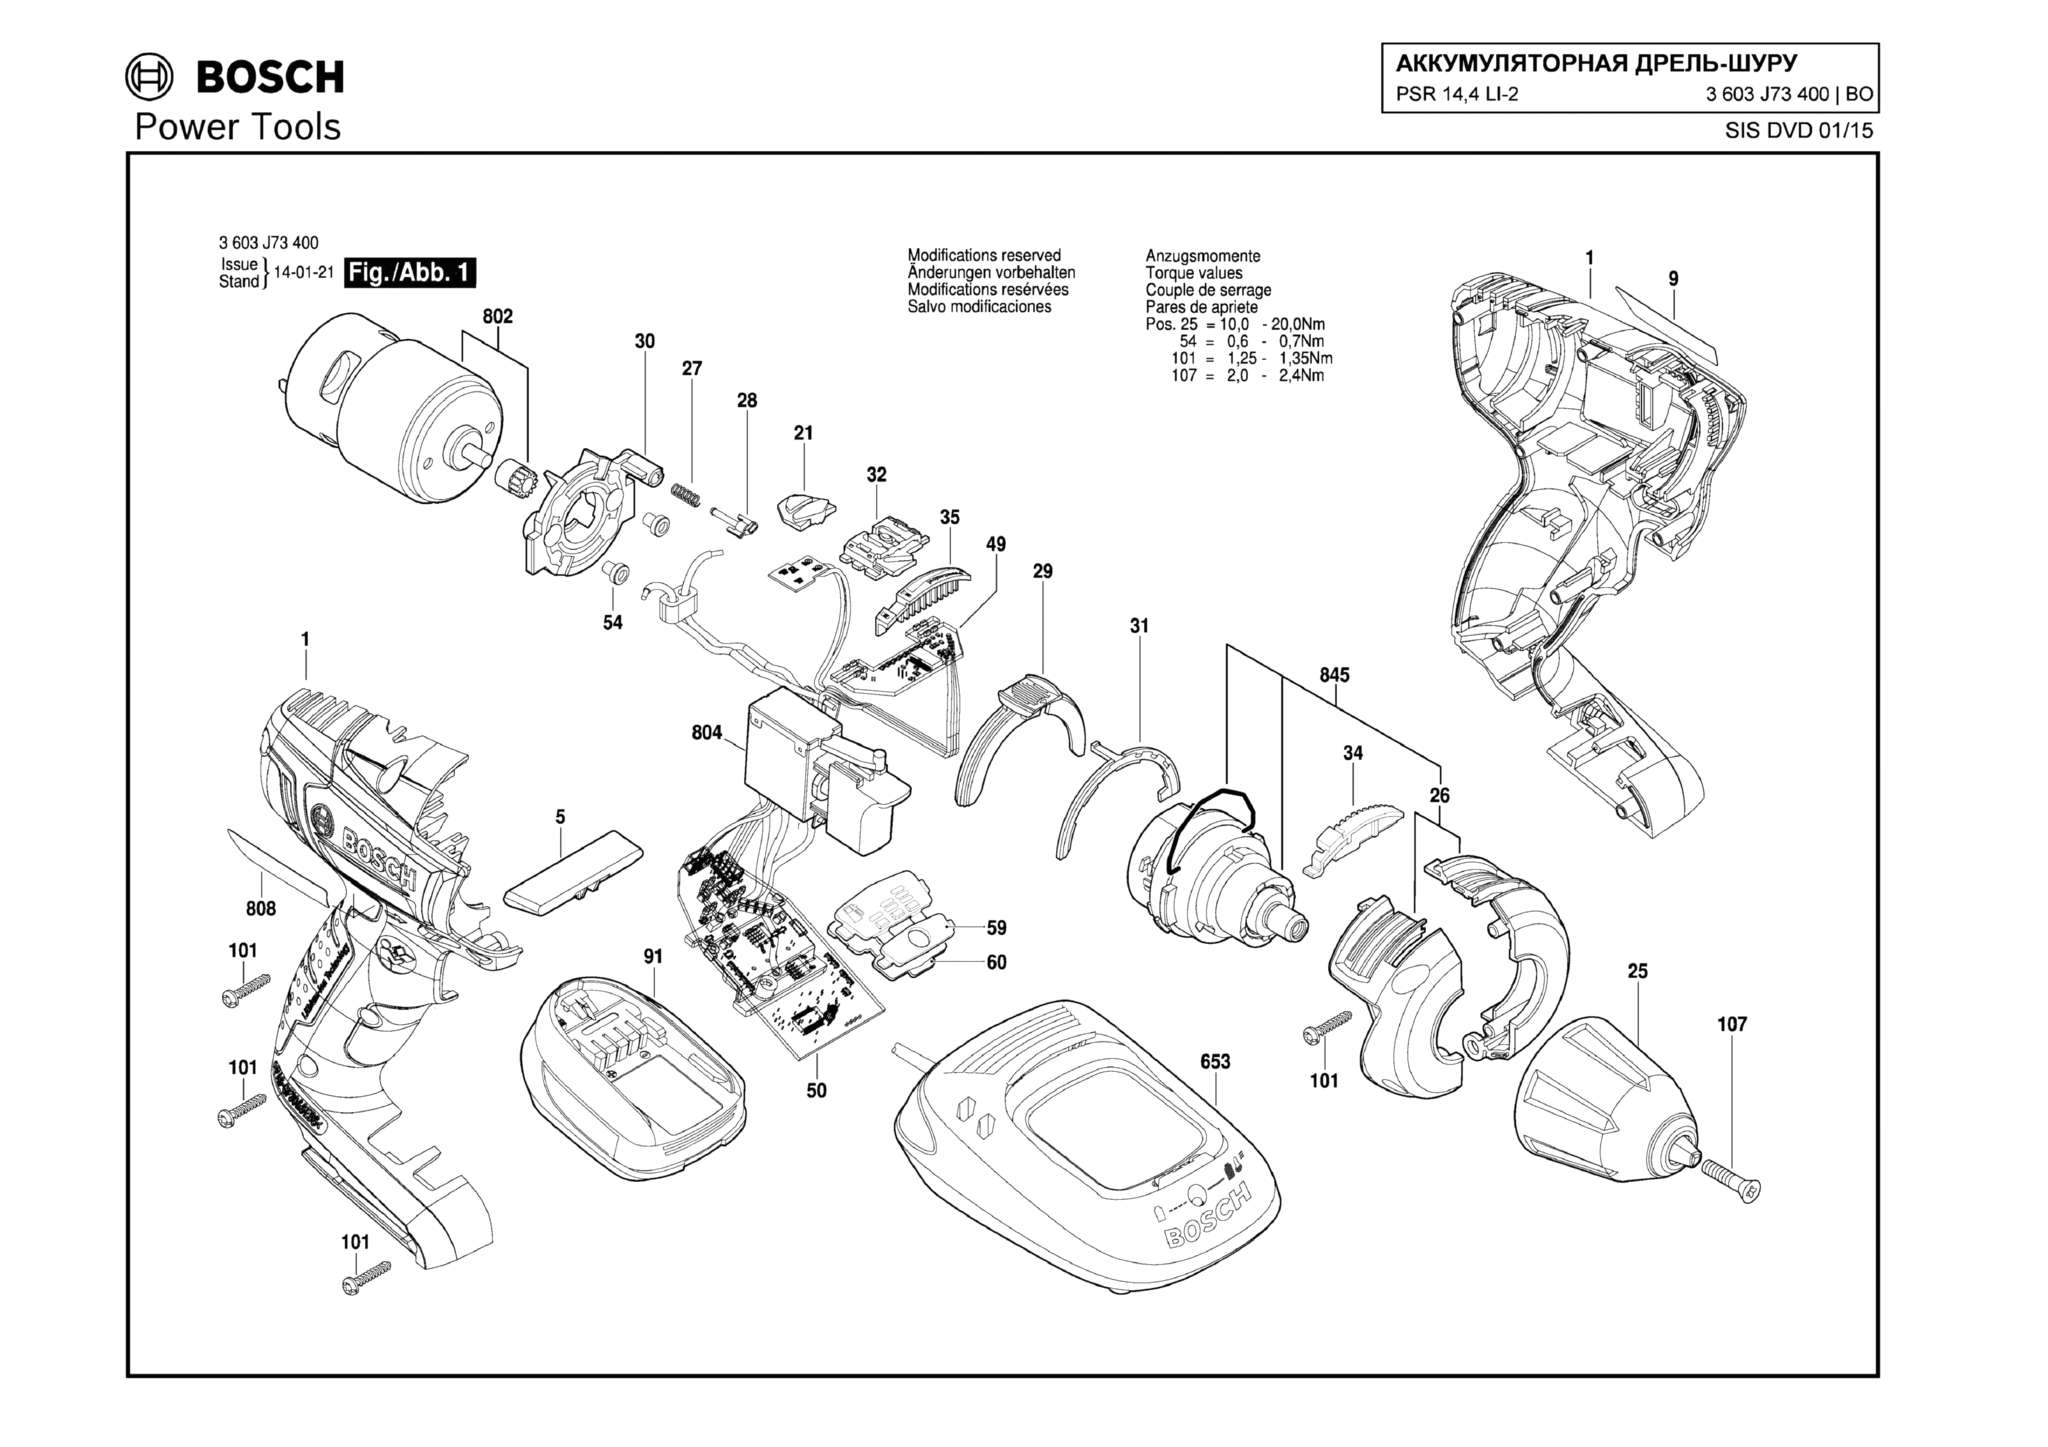 Запчасти, схема и деталировка Bosch PSR 14,4 LI-2 (ТИП 3603J73400)